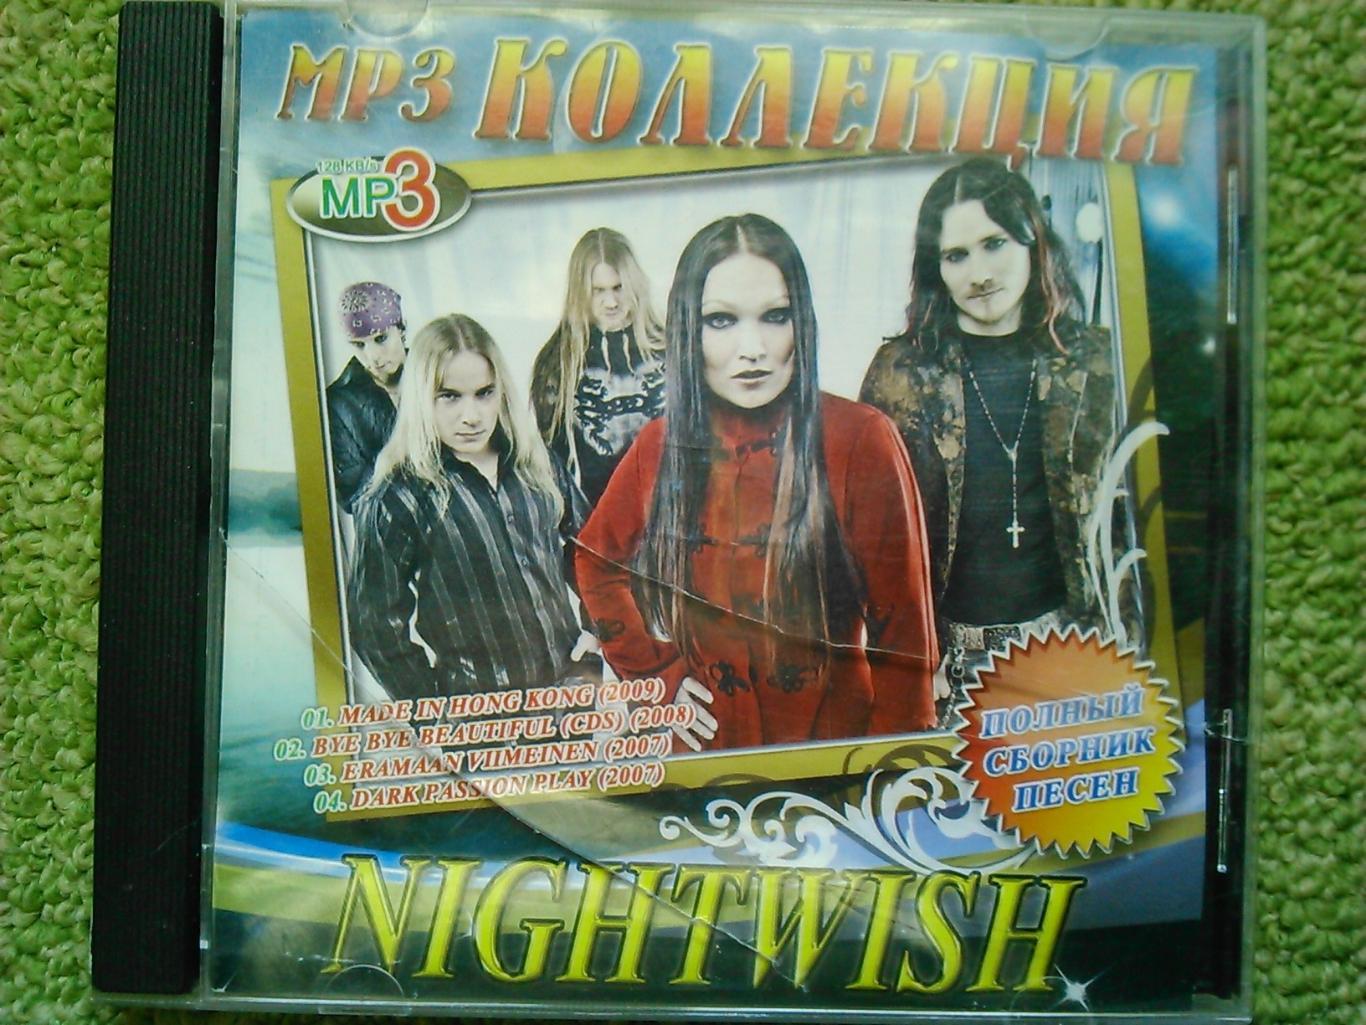 NIGHTWISH MP3 КОЛЛЕКЦИЯ 1997-2009. Оптом скидки до 45%!